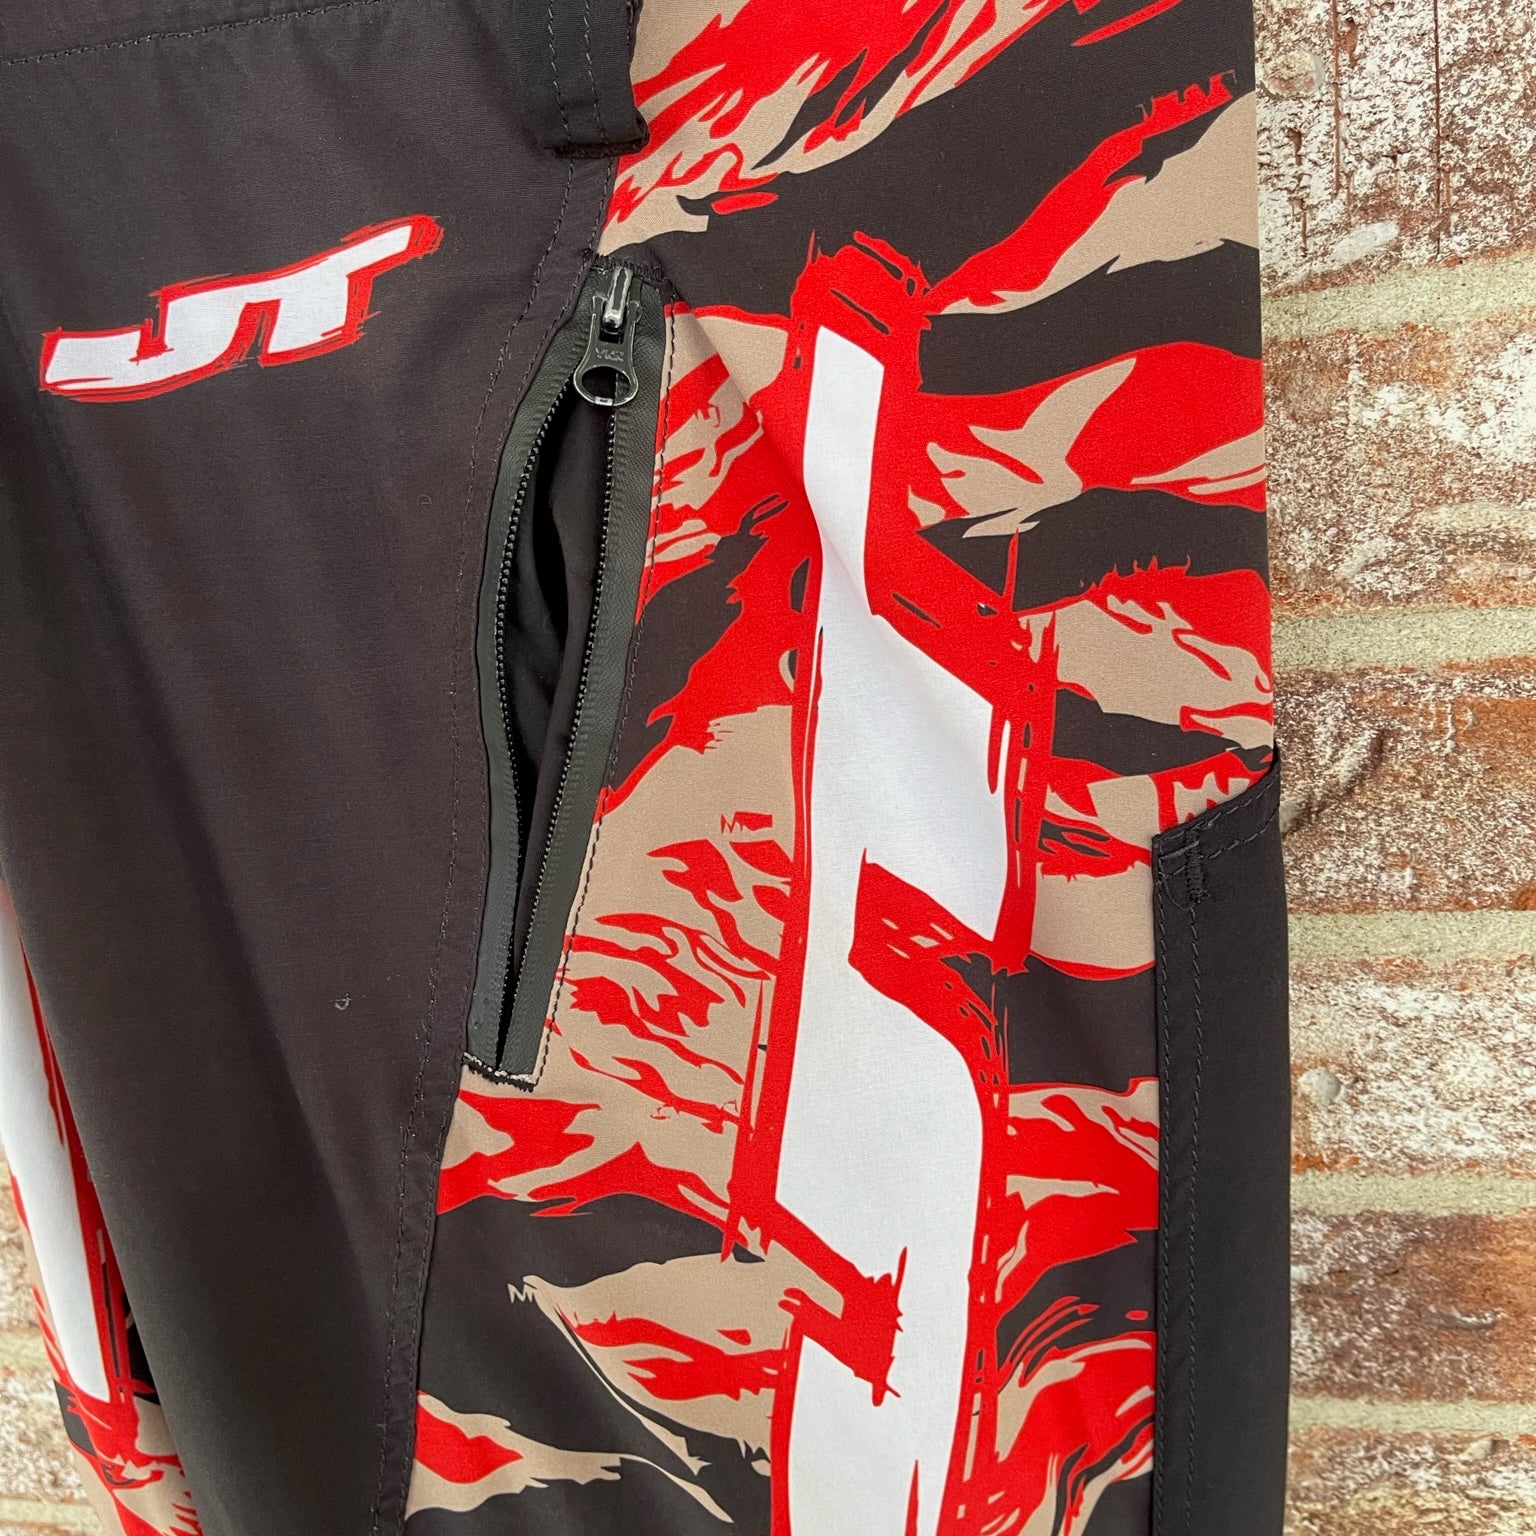 Used JT Team Jogger Paintball Pants - Medium